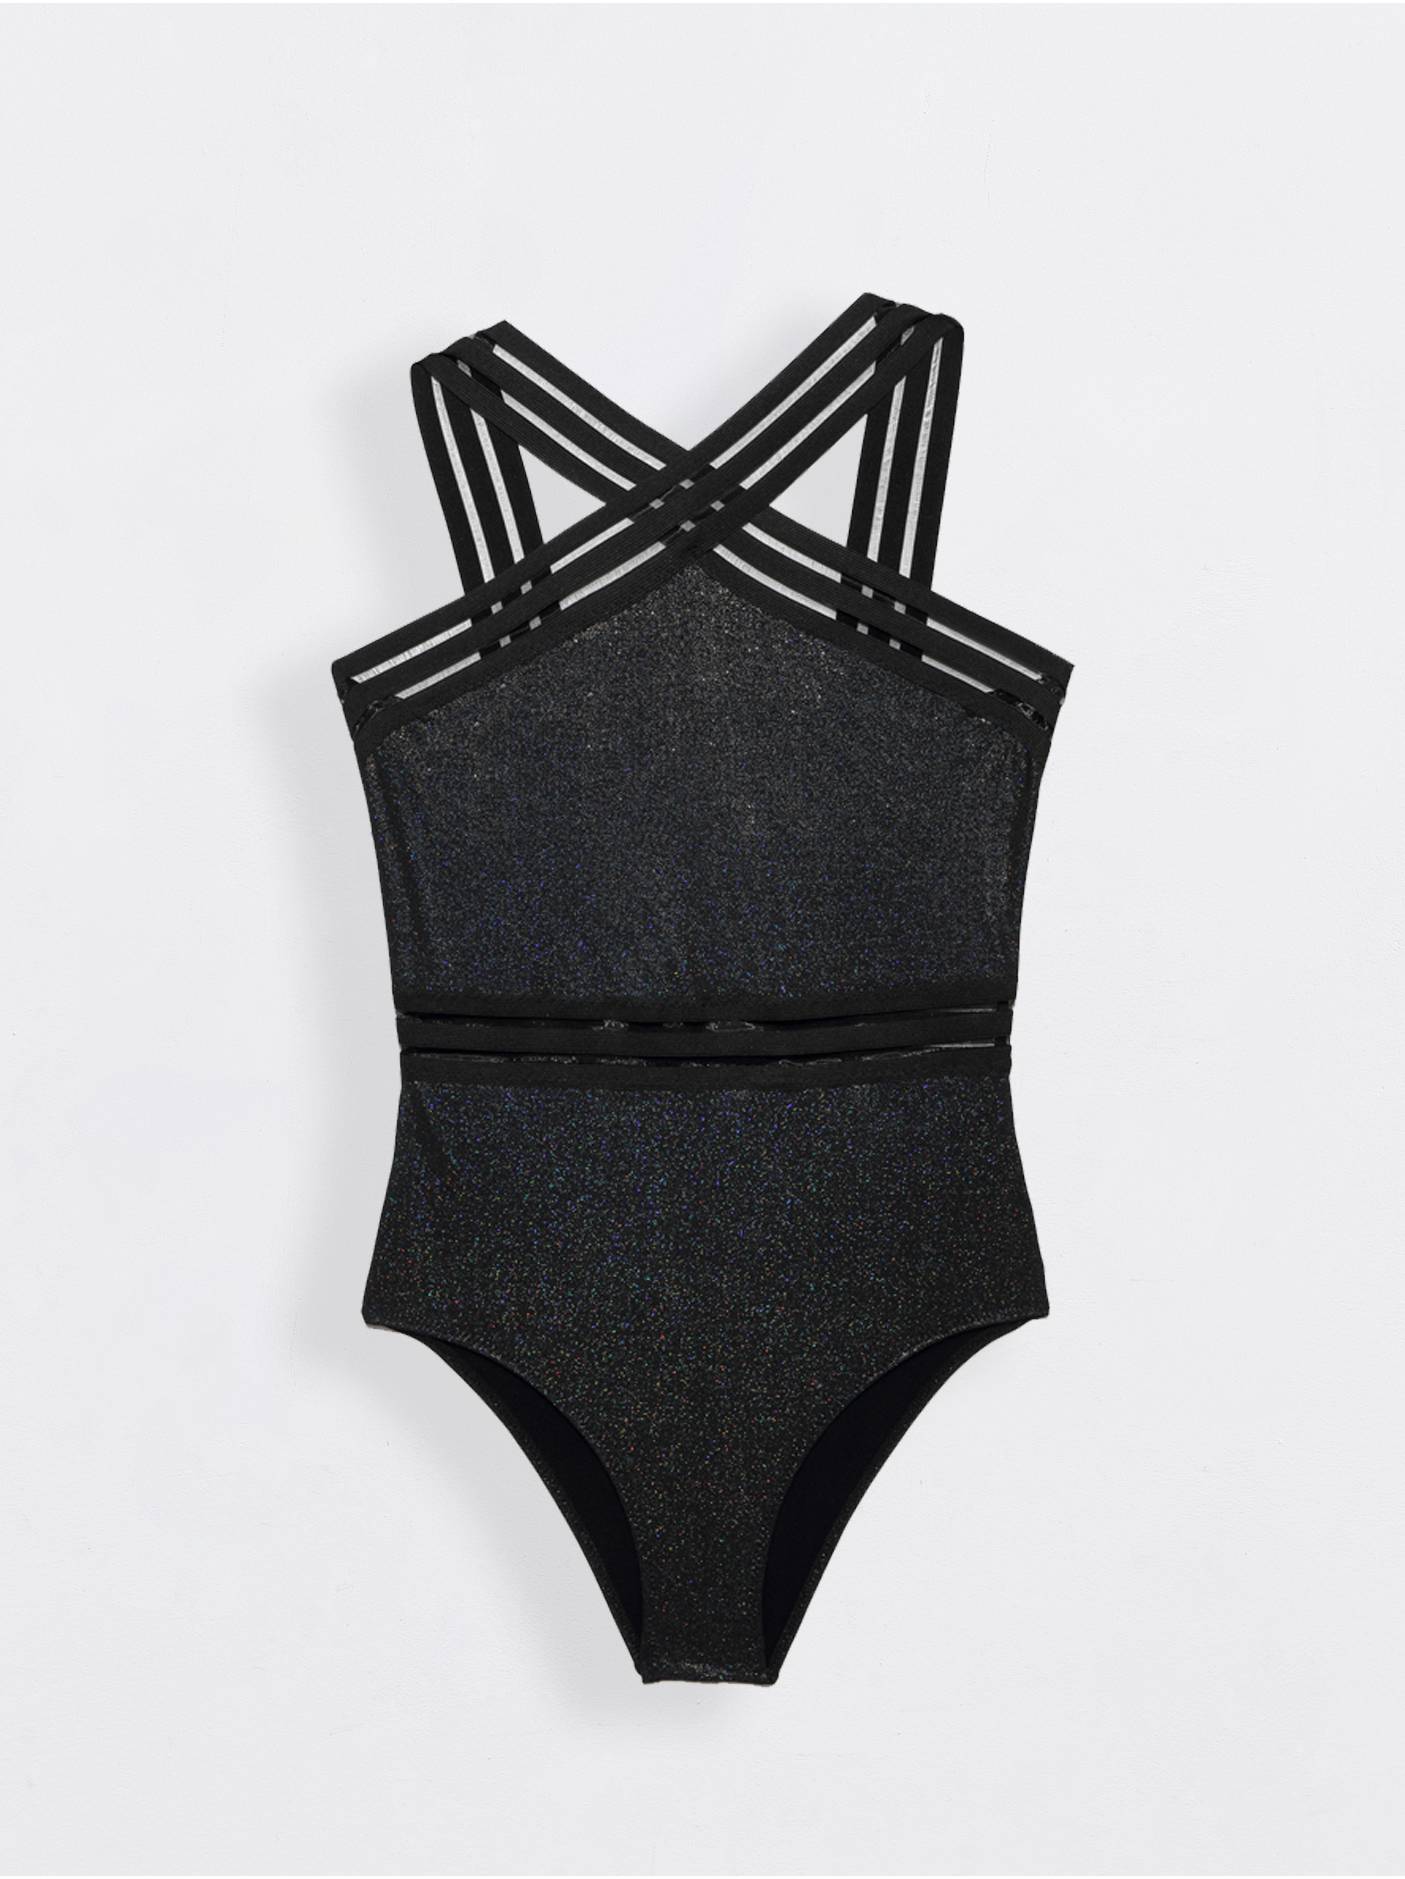 Ультрамодный купальник с эффектом мерцания BELLA DONNA Conte ⭐️, цвет black, размер 170